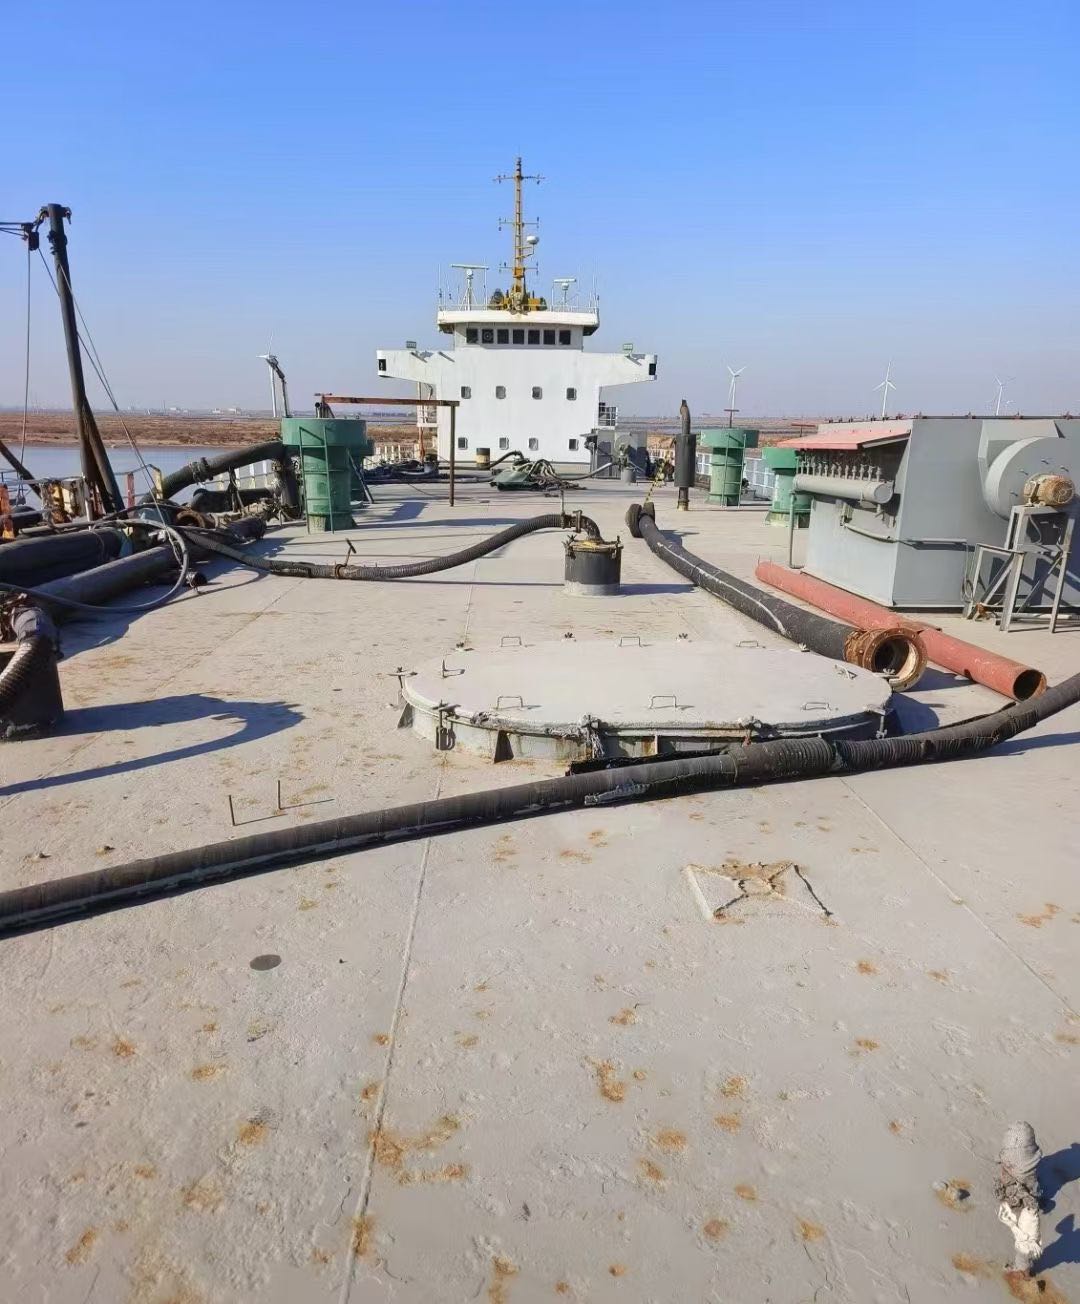 出售09年安徽造4000吨运散水泥船